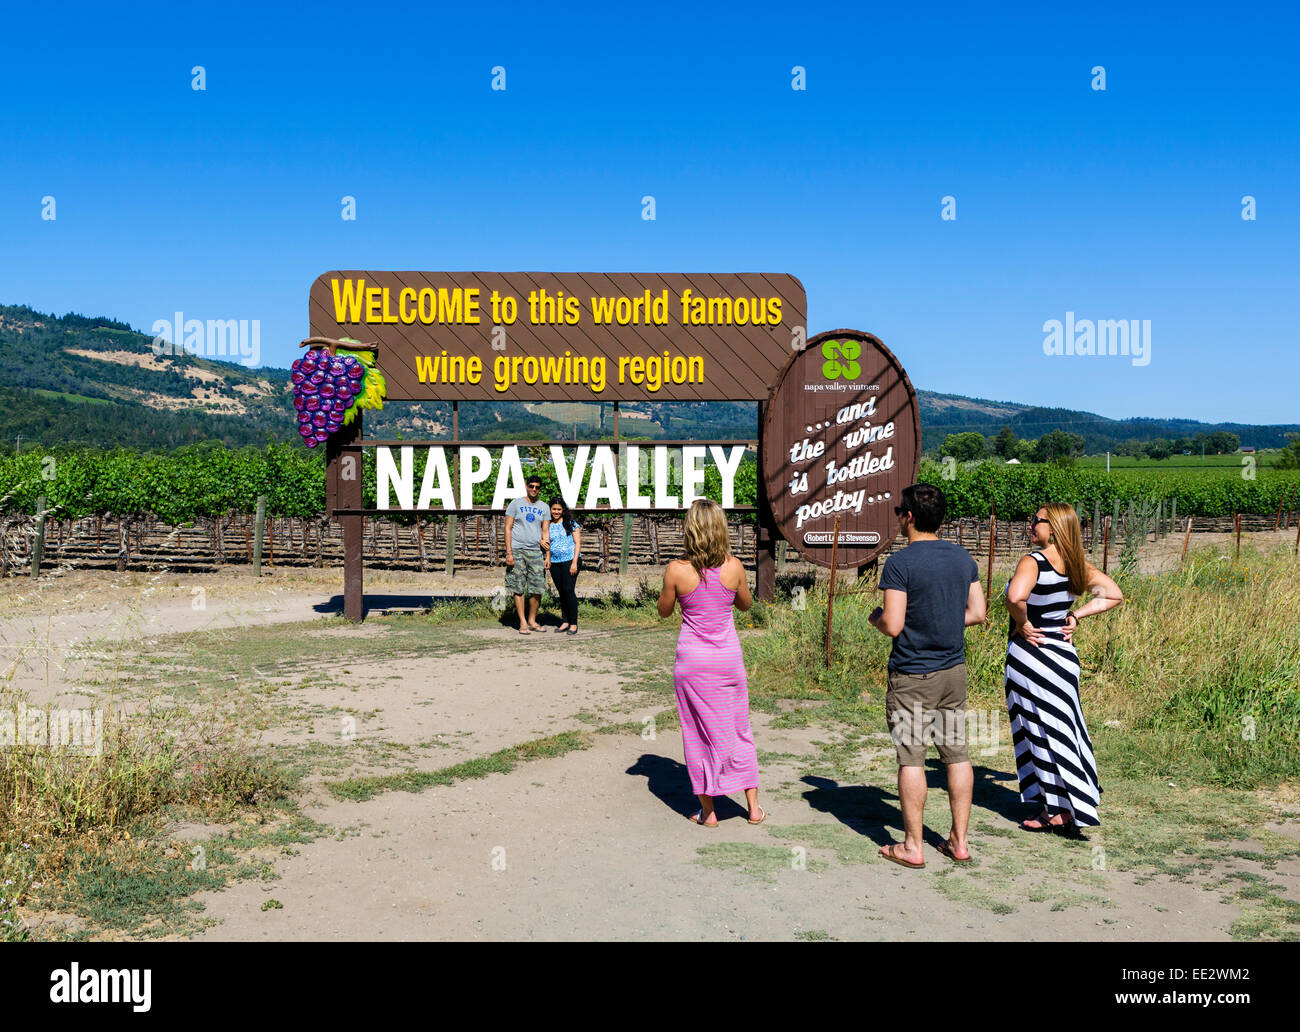 Turistas tomando fotos delante del cartel de bienvenida al norte de Santa Elena, Napa Valley Wine Country, el norte de California, EE.UU. Foto de stock